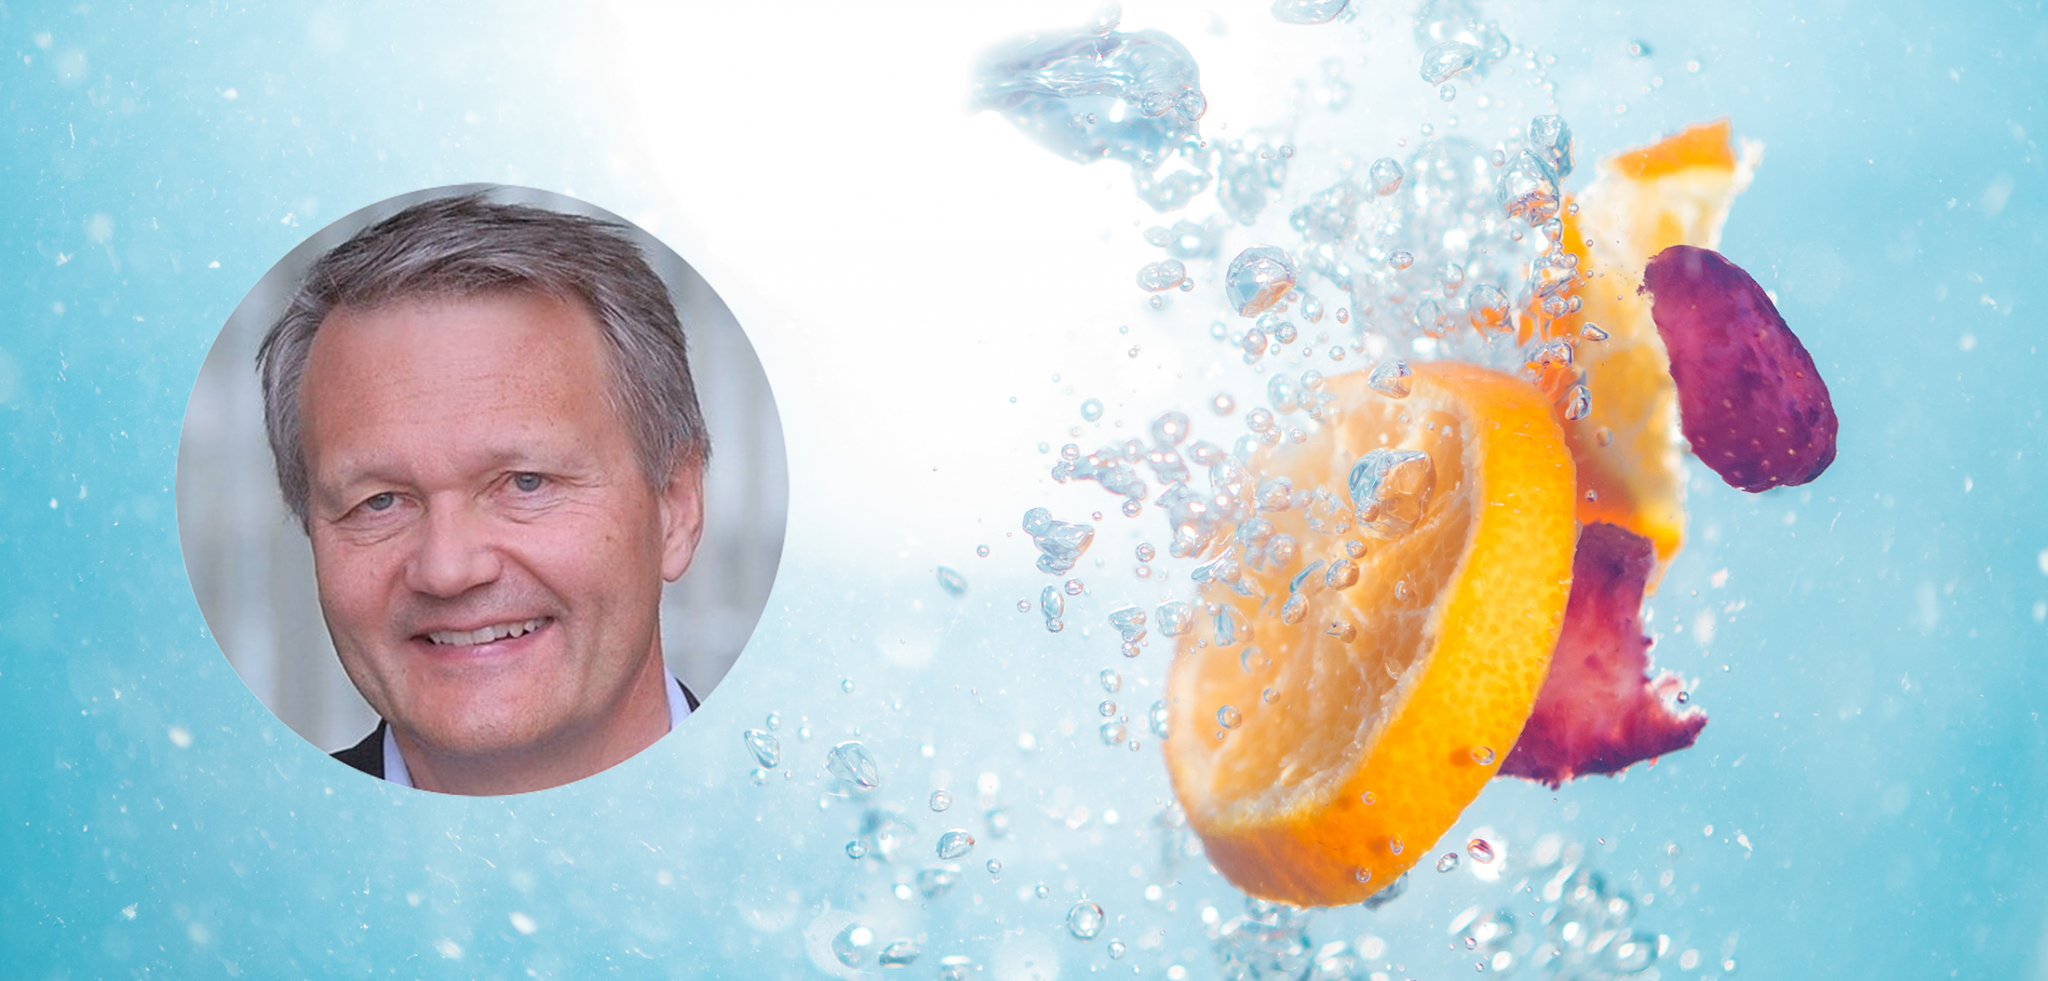 Appelsinskiver og kronblader som slippes i vann sammen med et profilbilde av Xledger ansatt Knut Rønning.